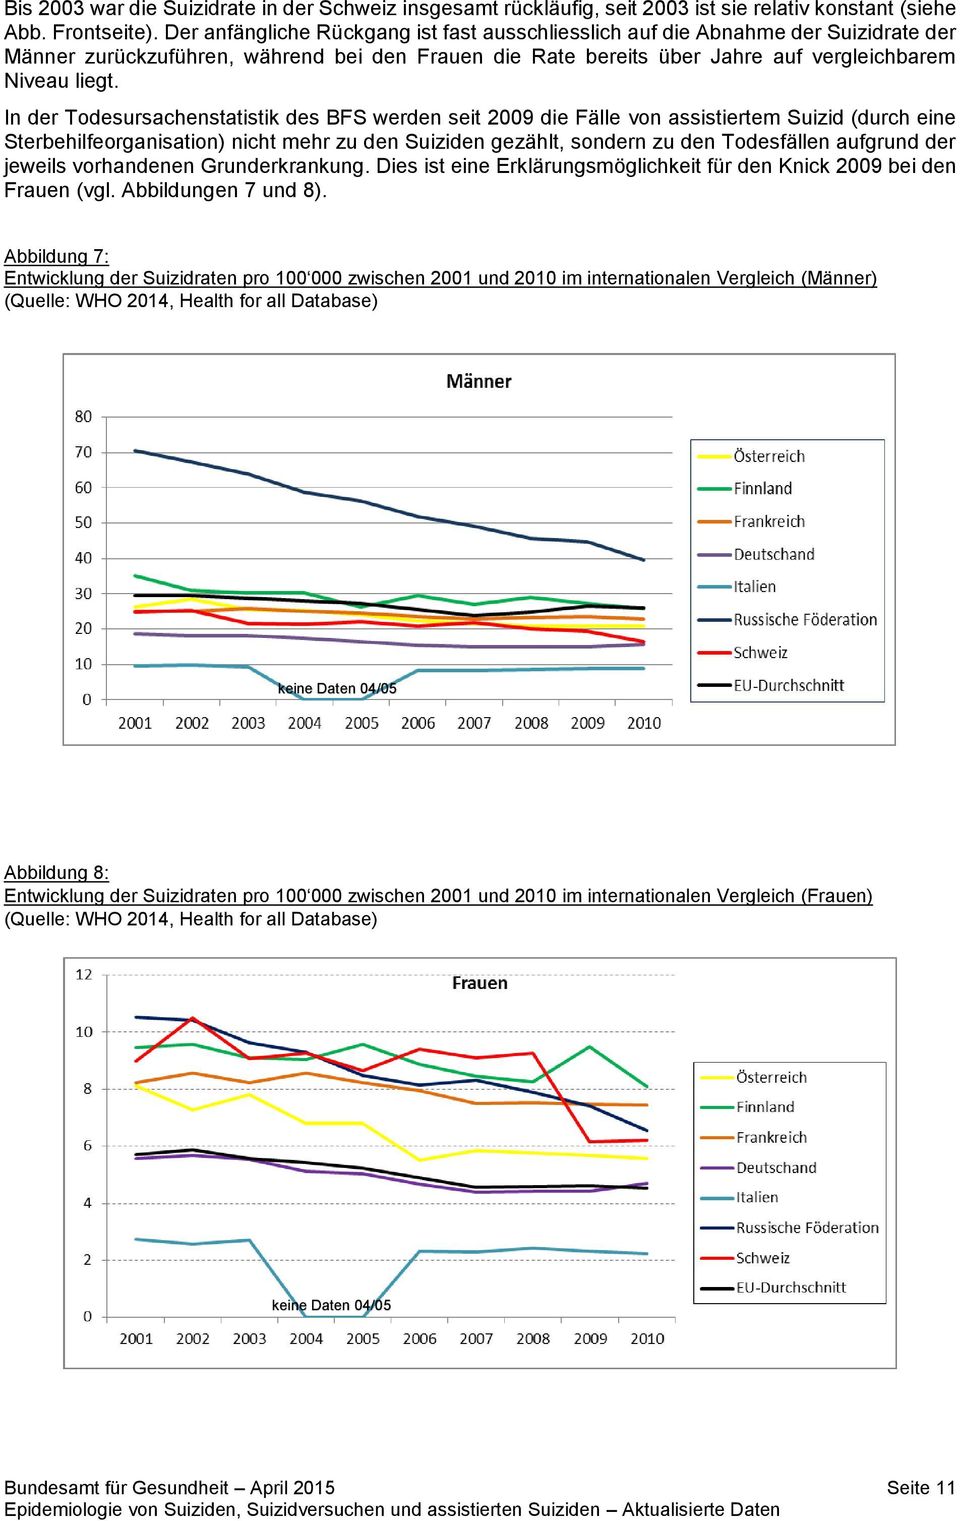 In der Todesursachenstatistik des BFS werden seit 2009 die Fälle von assistiertem Suizid (durch eine Sterbehilfeorganisation) nicht mehr zu den Suiziden gezählt, sondern zu den Todesfällen aufgrund